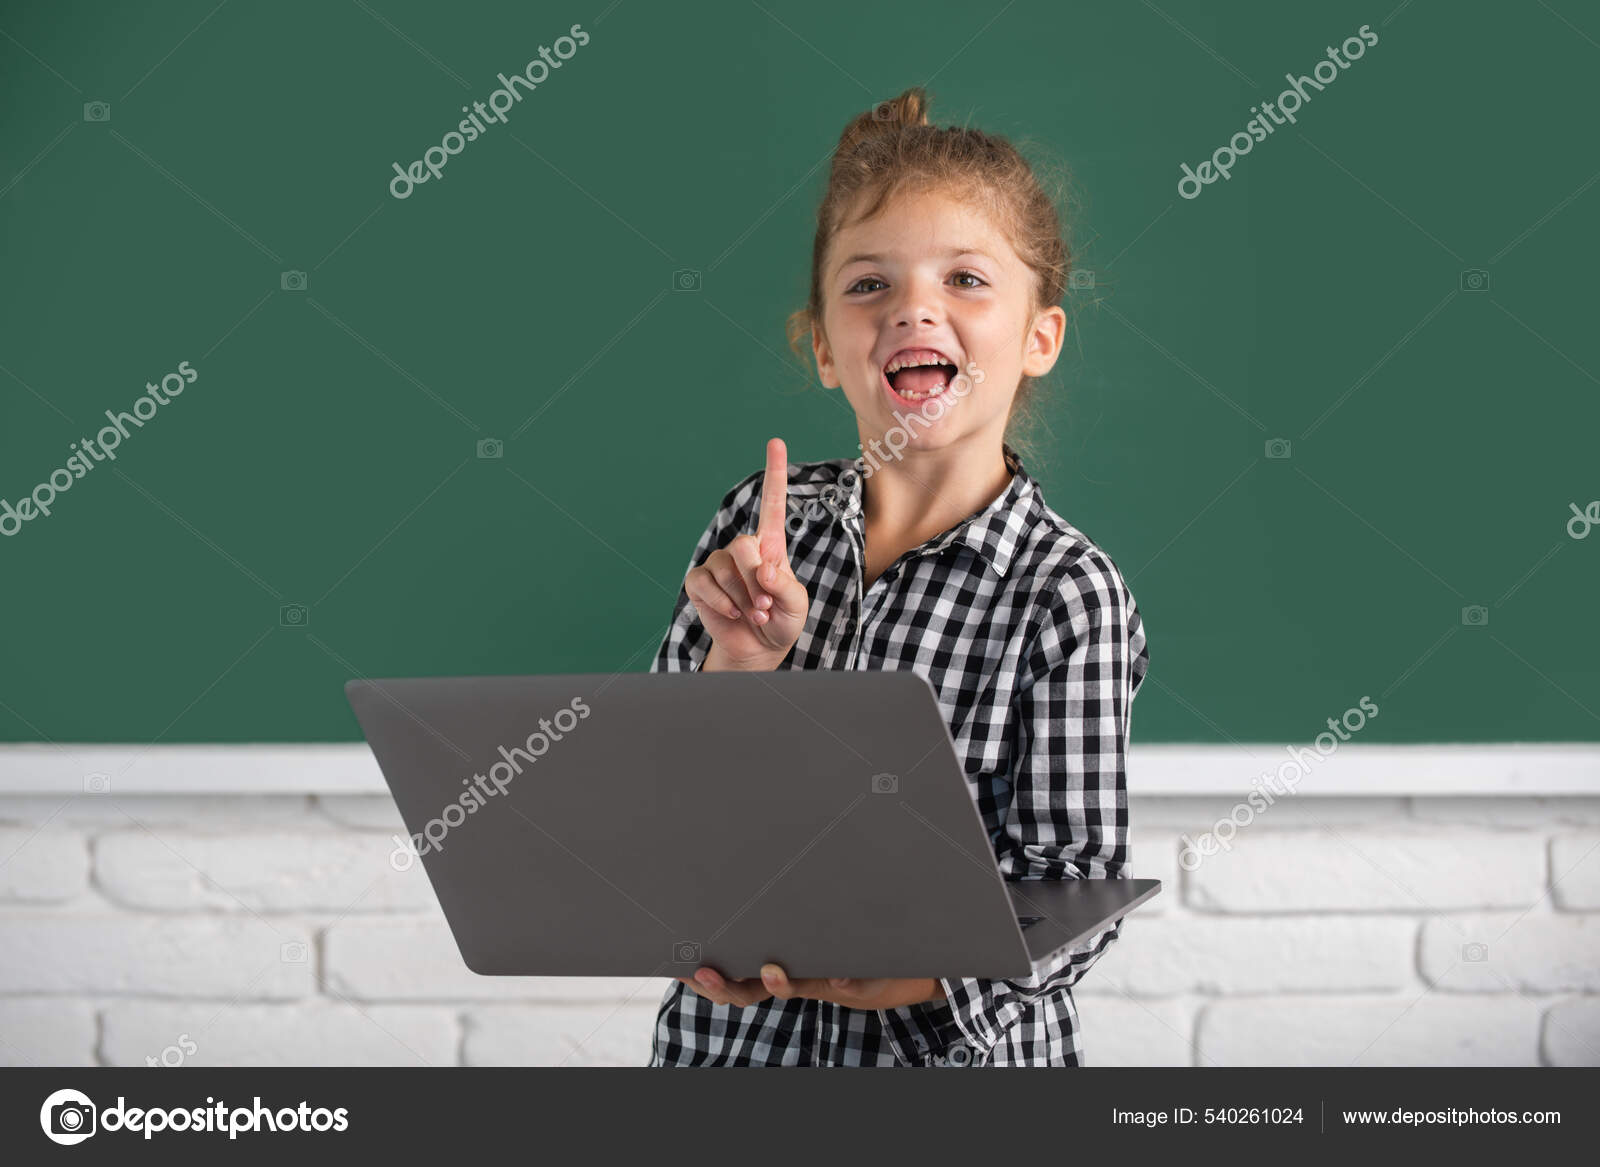 Perfervid klarhed knus Skole barn pige ved hjælp af digital pc laptop i klassen. Portræt af morsom  elev af folkeskolens studieprogram. — Stock-foto © Tverdohlib.com #540261024